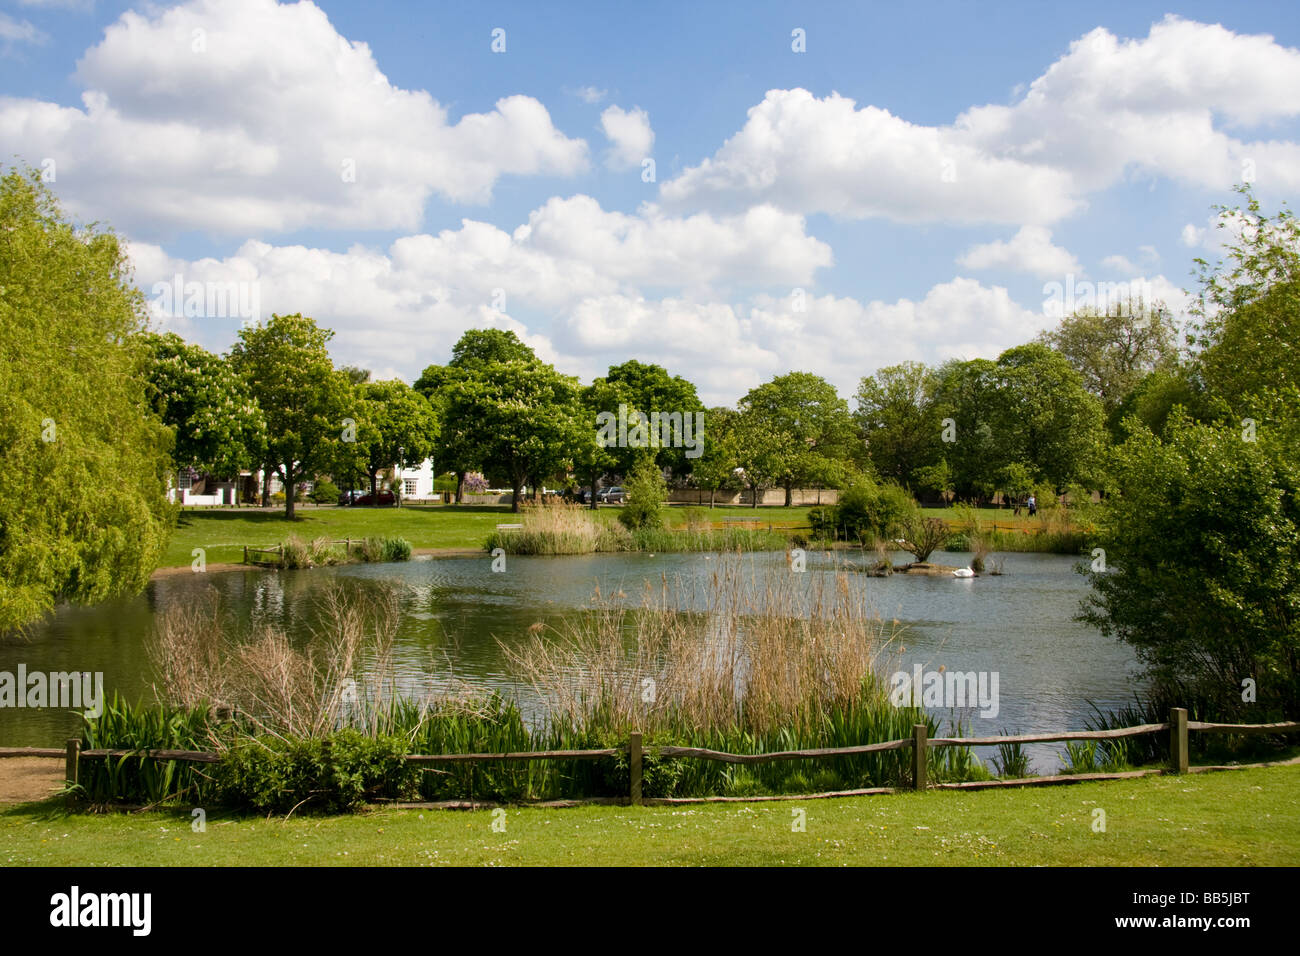 Teich am Schinken gemeinsame Richmond Upon Thames, Surrey England Stockfoto